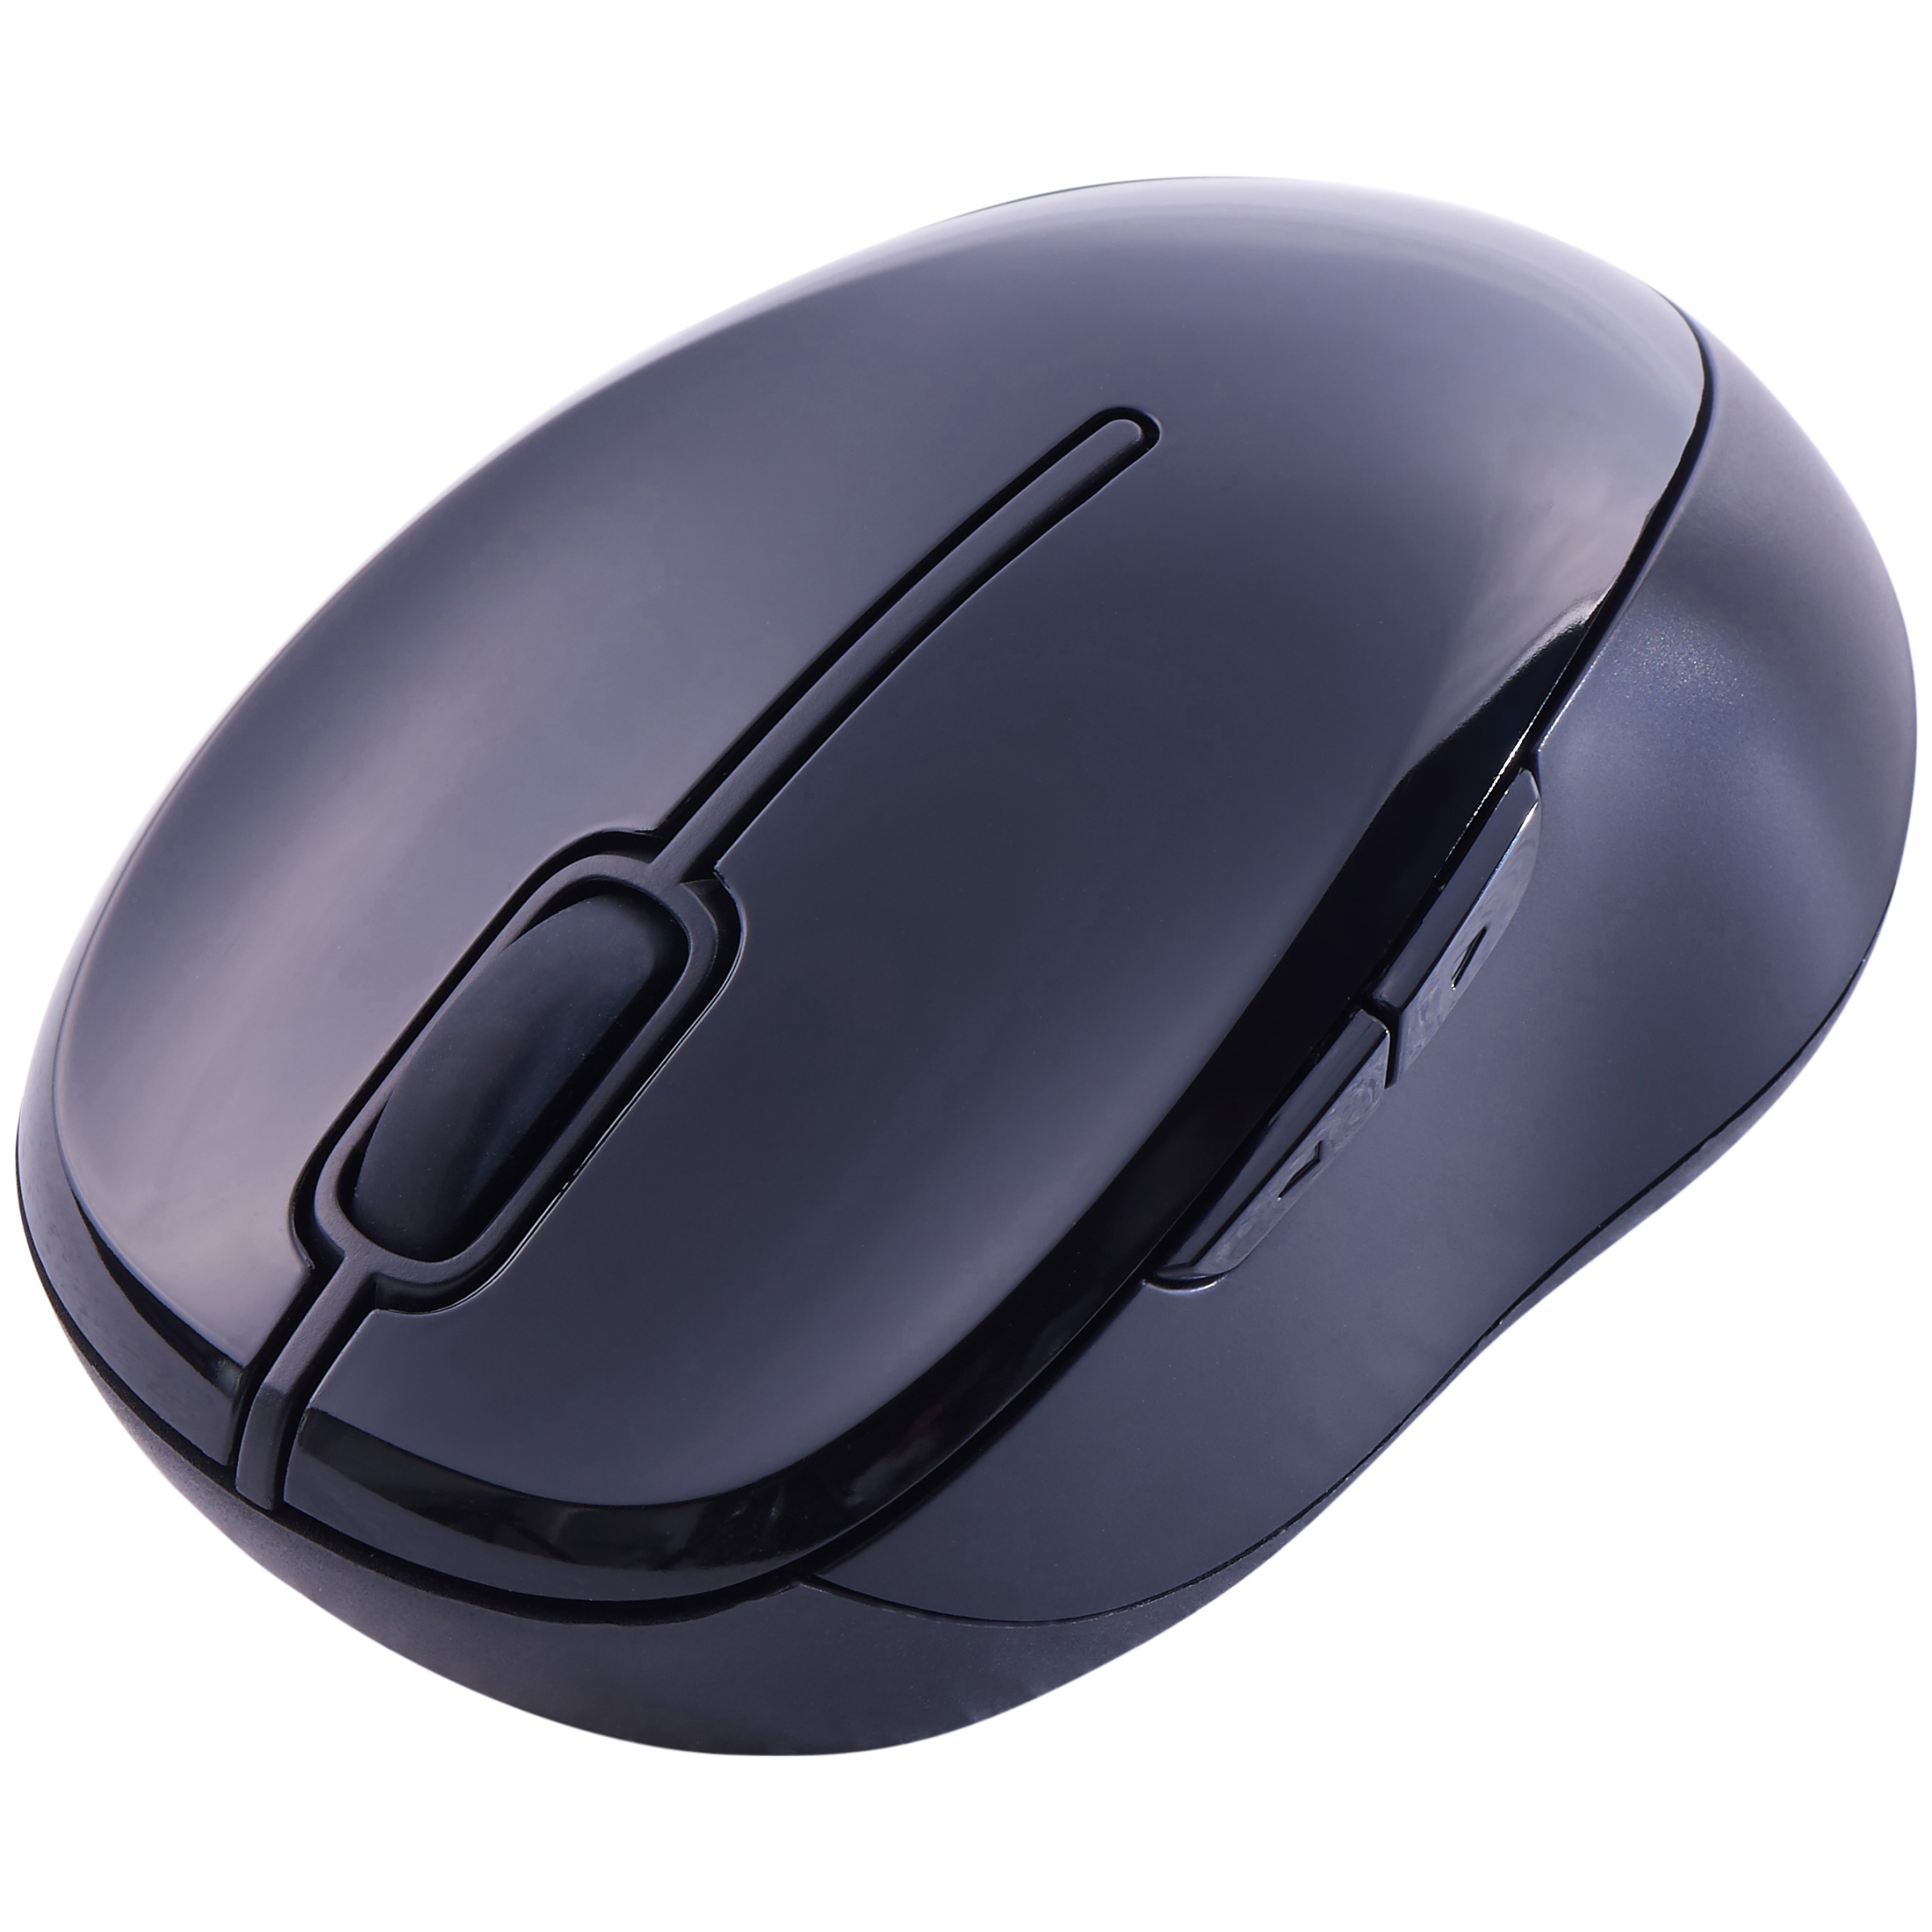 Swissgear wireless mouse driver update